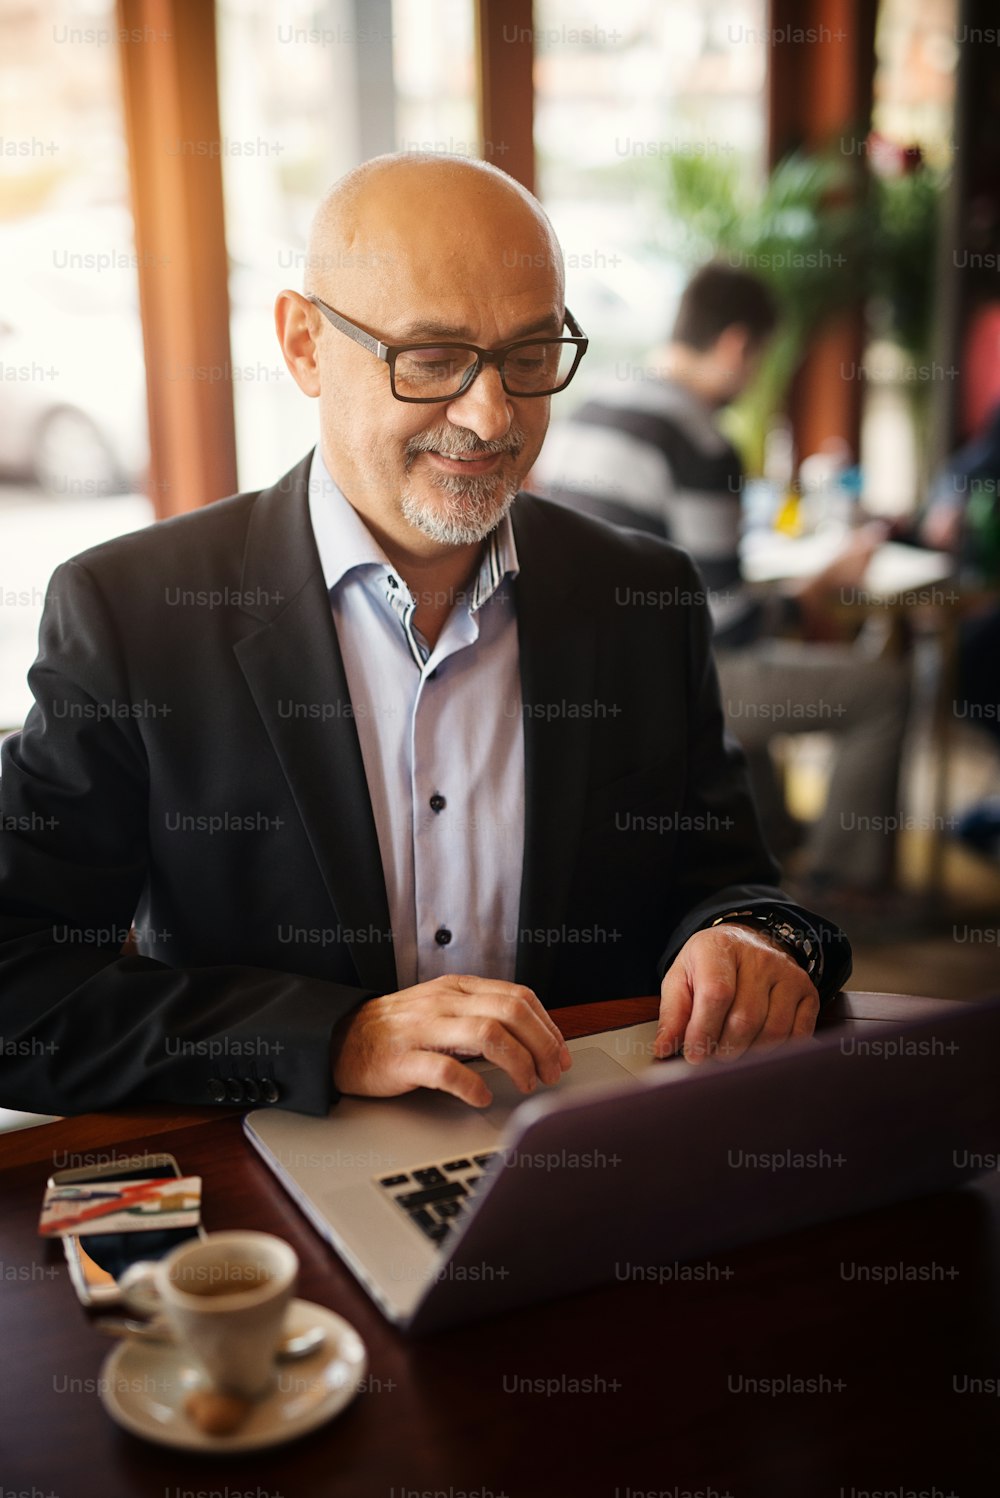 Der reife, glückliche Geschäftsmann freut sich, was er auf seinem Laptop sieht, während er in einem Café sitzt.